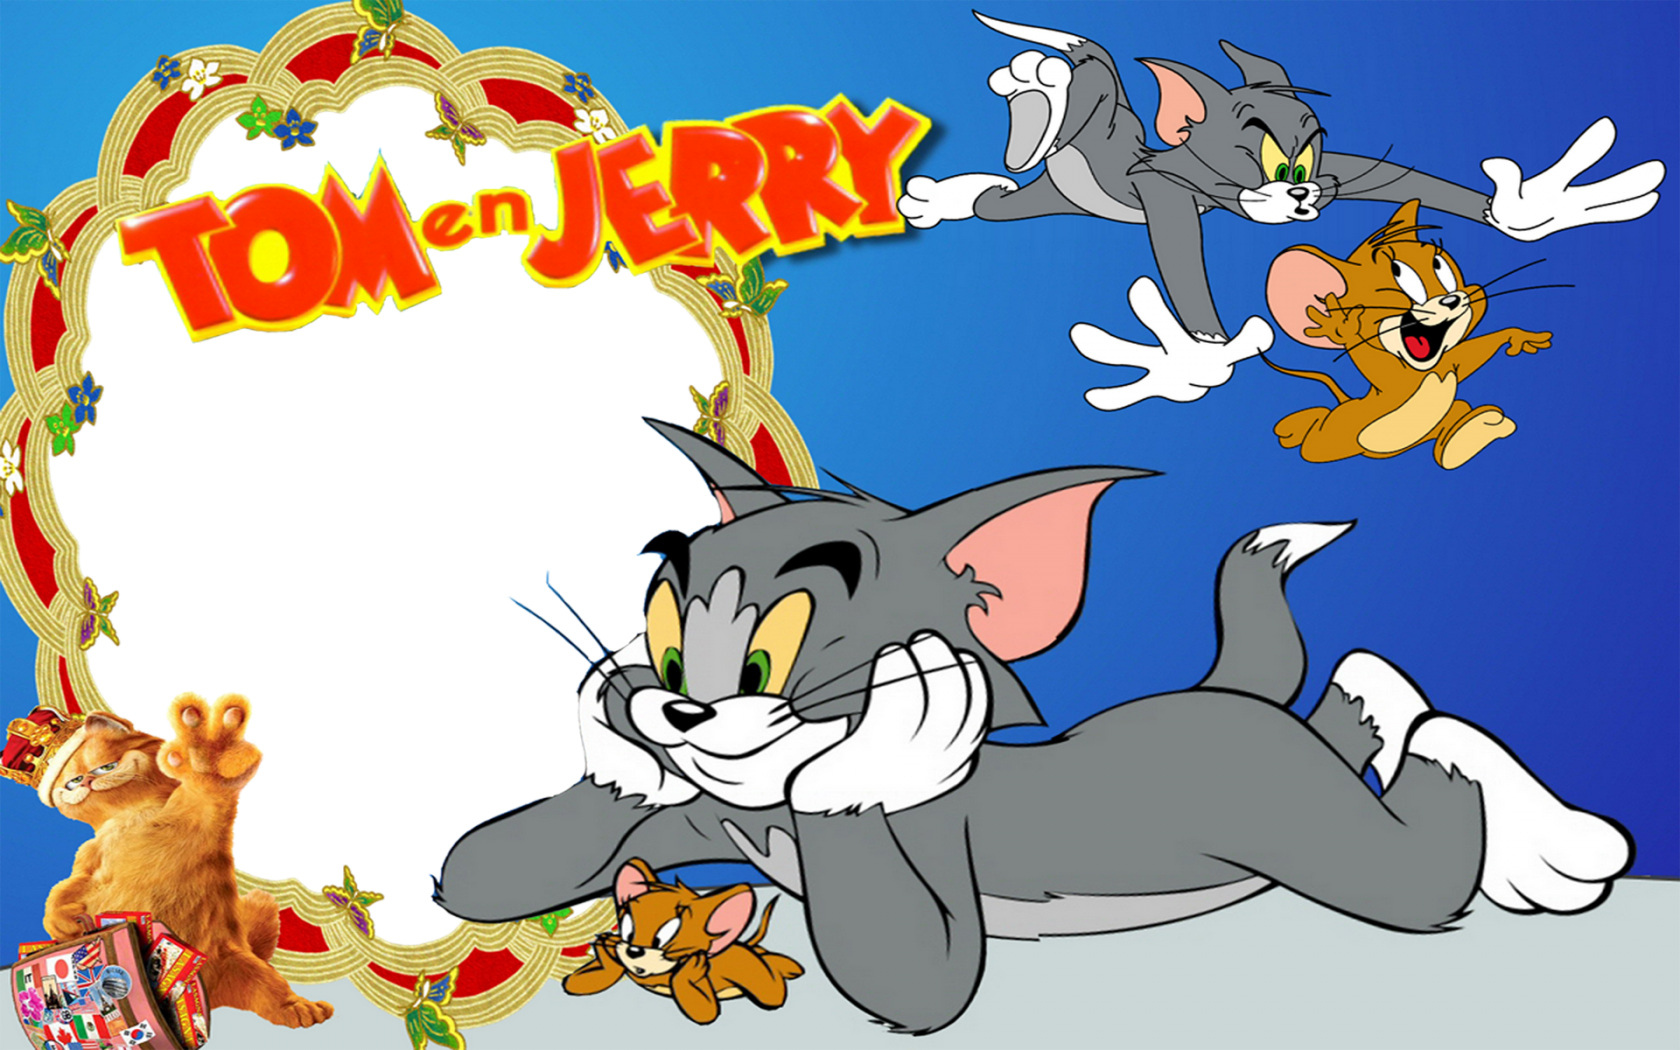 В каком году вышел том и джерри. Tom and Jerry. Том ва Джерри. Том и Джерри фон.